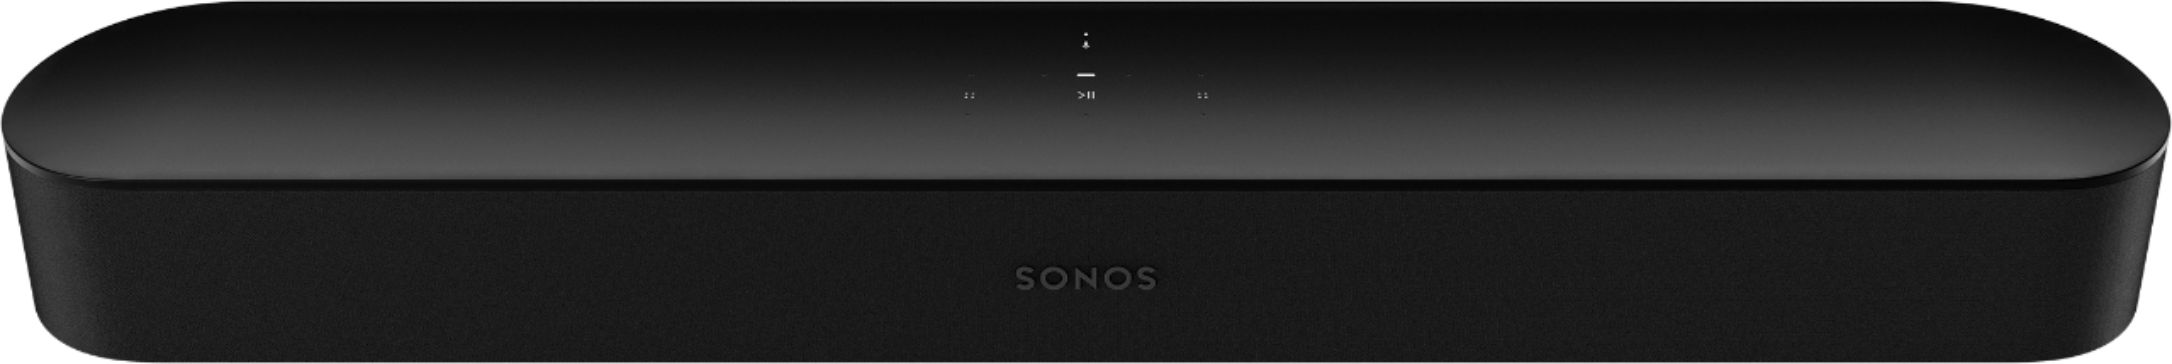 Sonos Beam Soundbar with Voice Control 